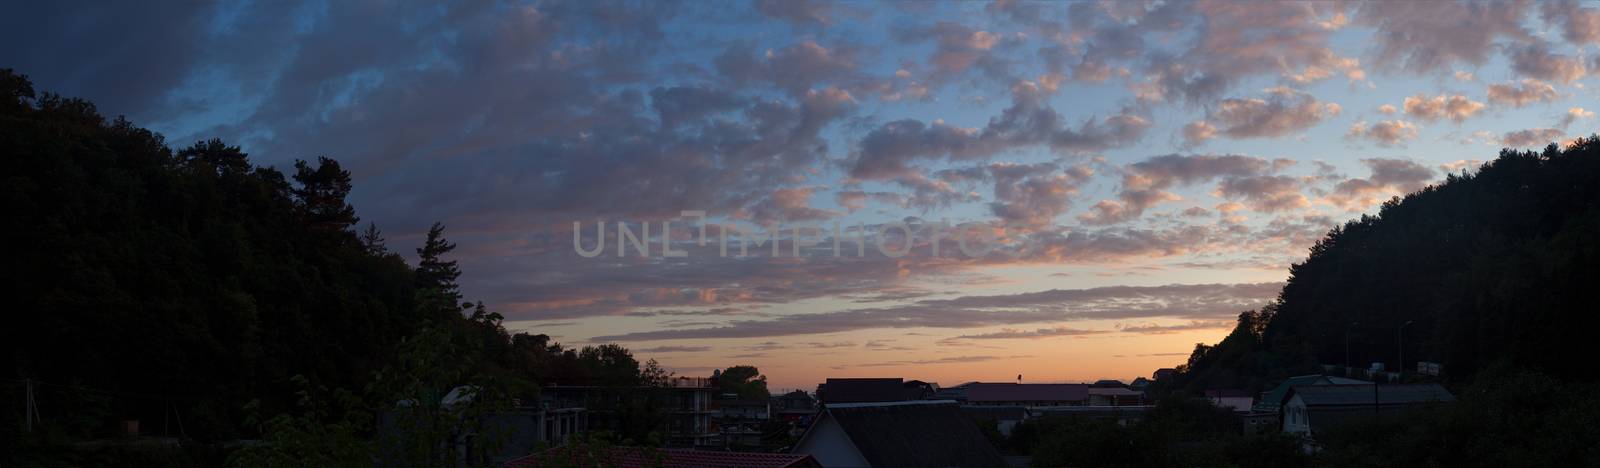 Sunset sky by Angorius